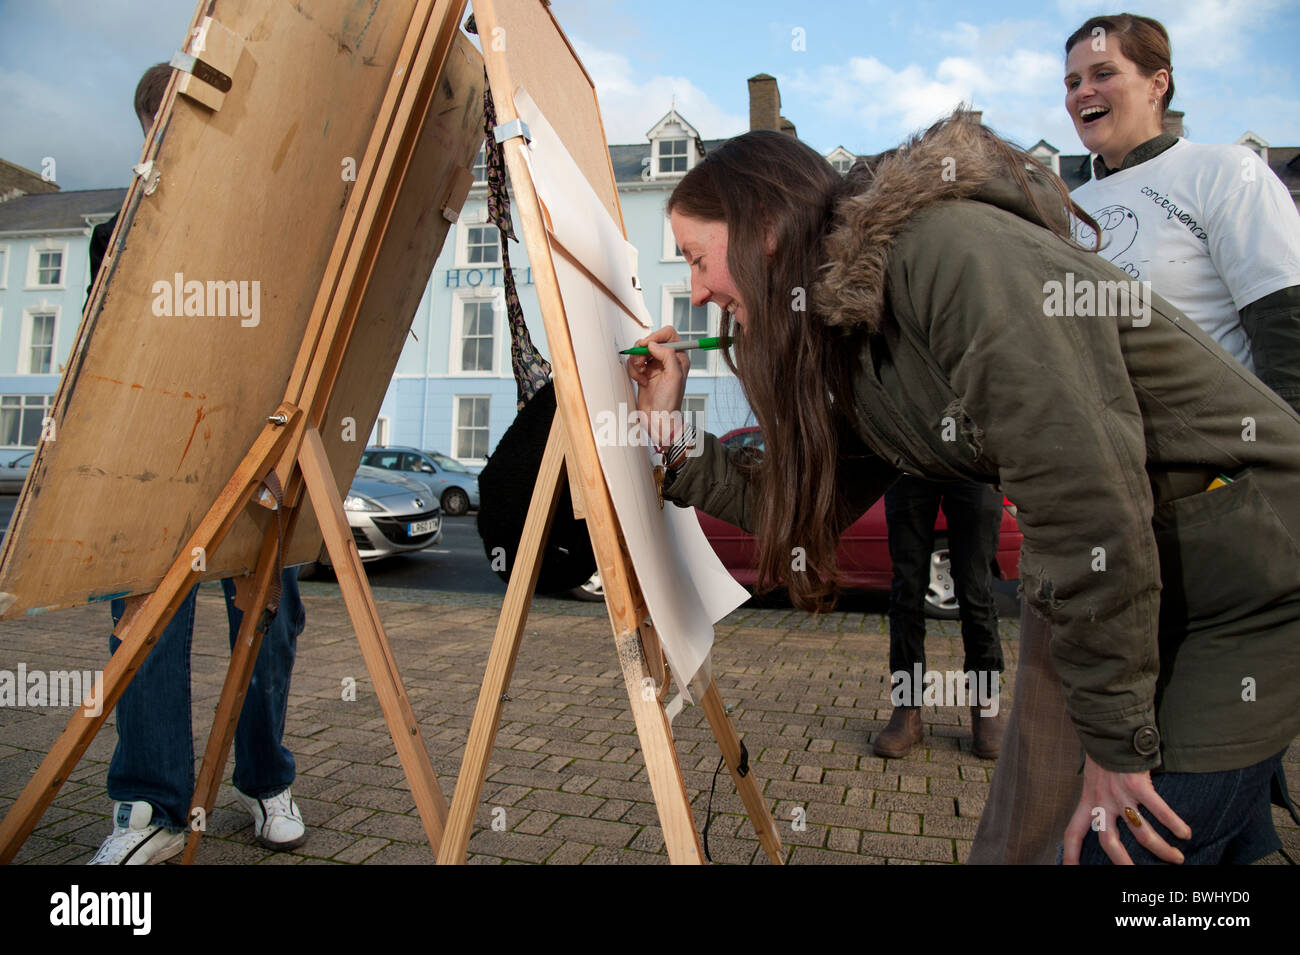 Aberystwyth estudiantes universitarios evento proyecto de arte al aire libre en el paseo marítimo, Gales, Reino Unido Foto de stock